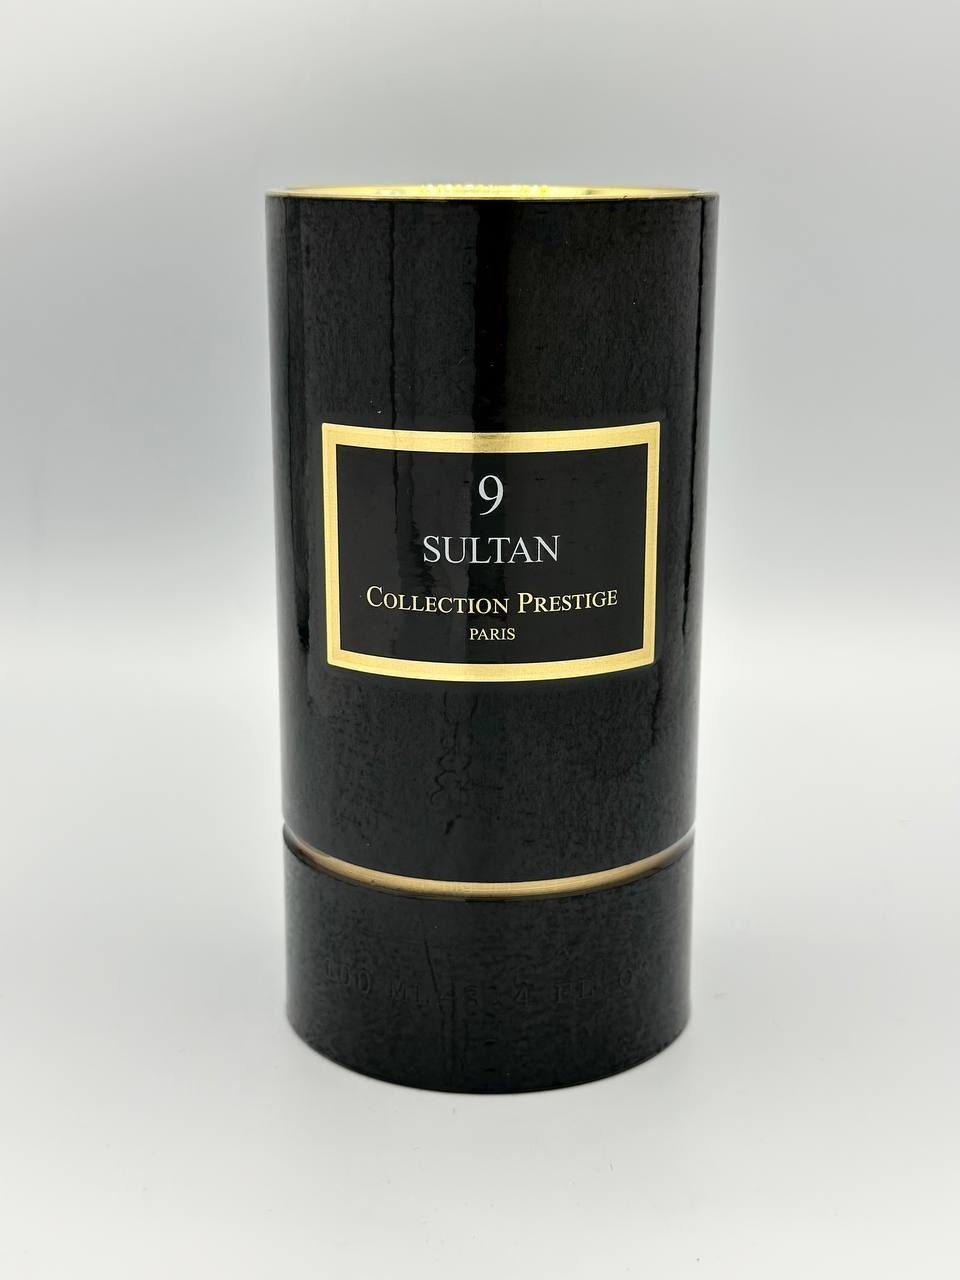 Collection Prestige Eau de Parfum Collection Prestige Paris 9 Sultan 50ml Eau de Parfum